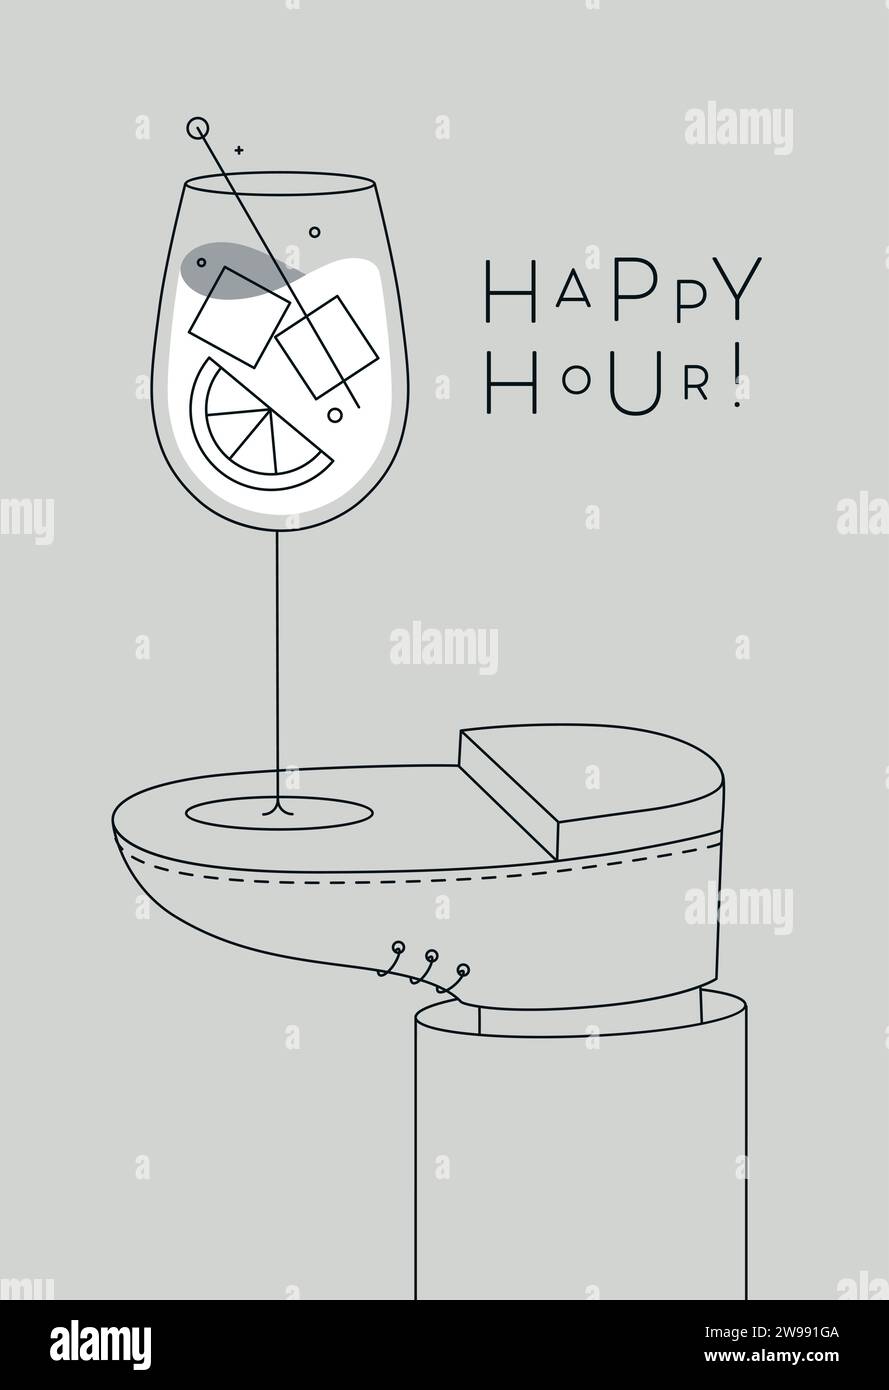 Alkoholposter. Spritz-Cocktailglas mit Schriftzug Happy Hour steht zu Fuß und zeichnet im Linienart-Stil auf grauem Hintergrund Stock Vektor